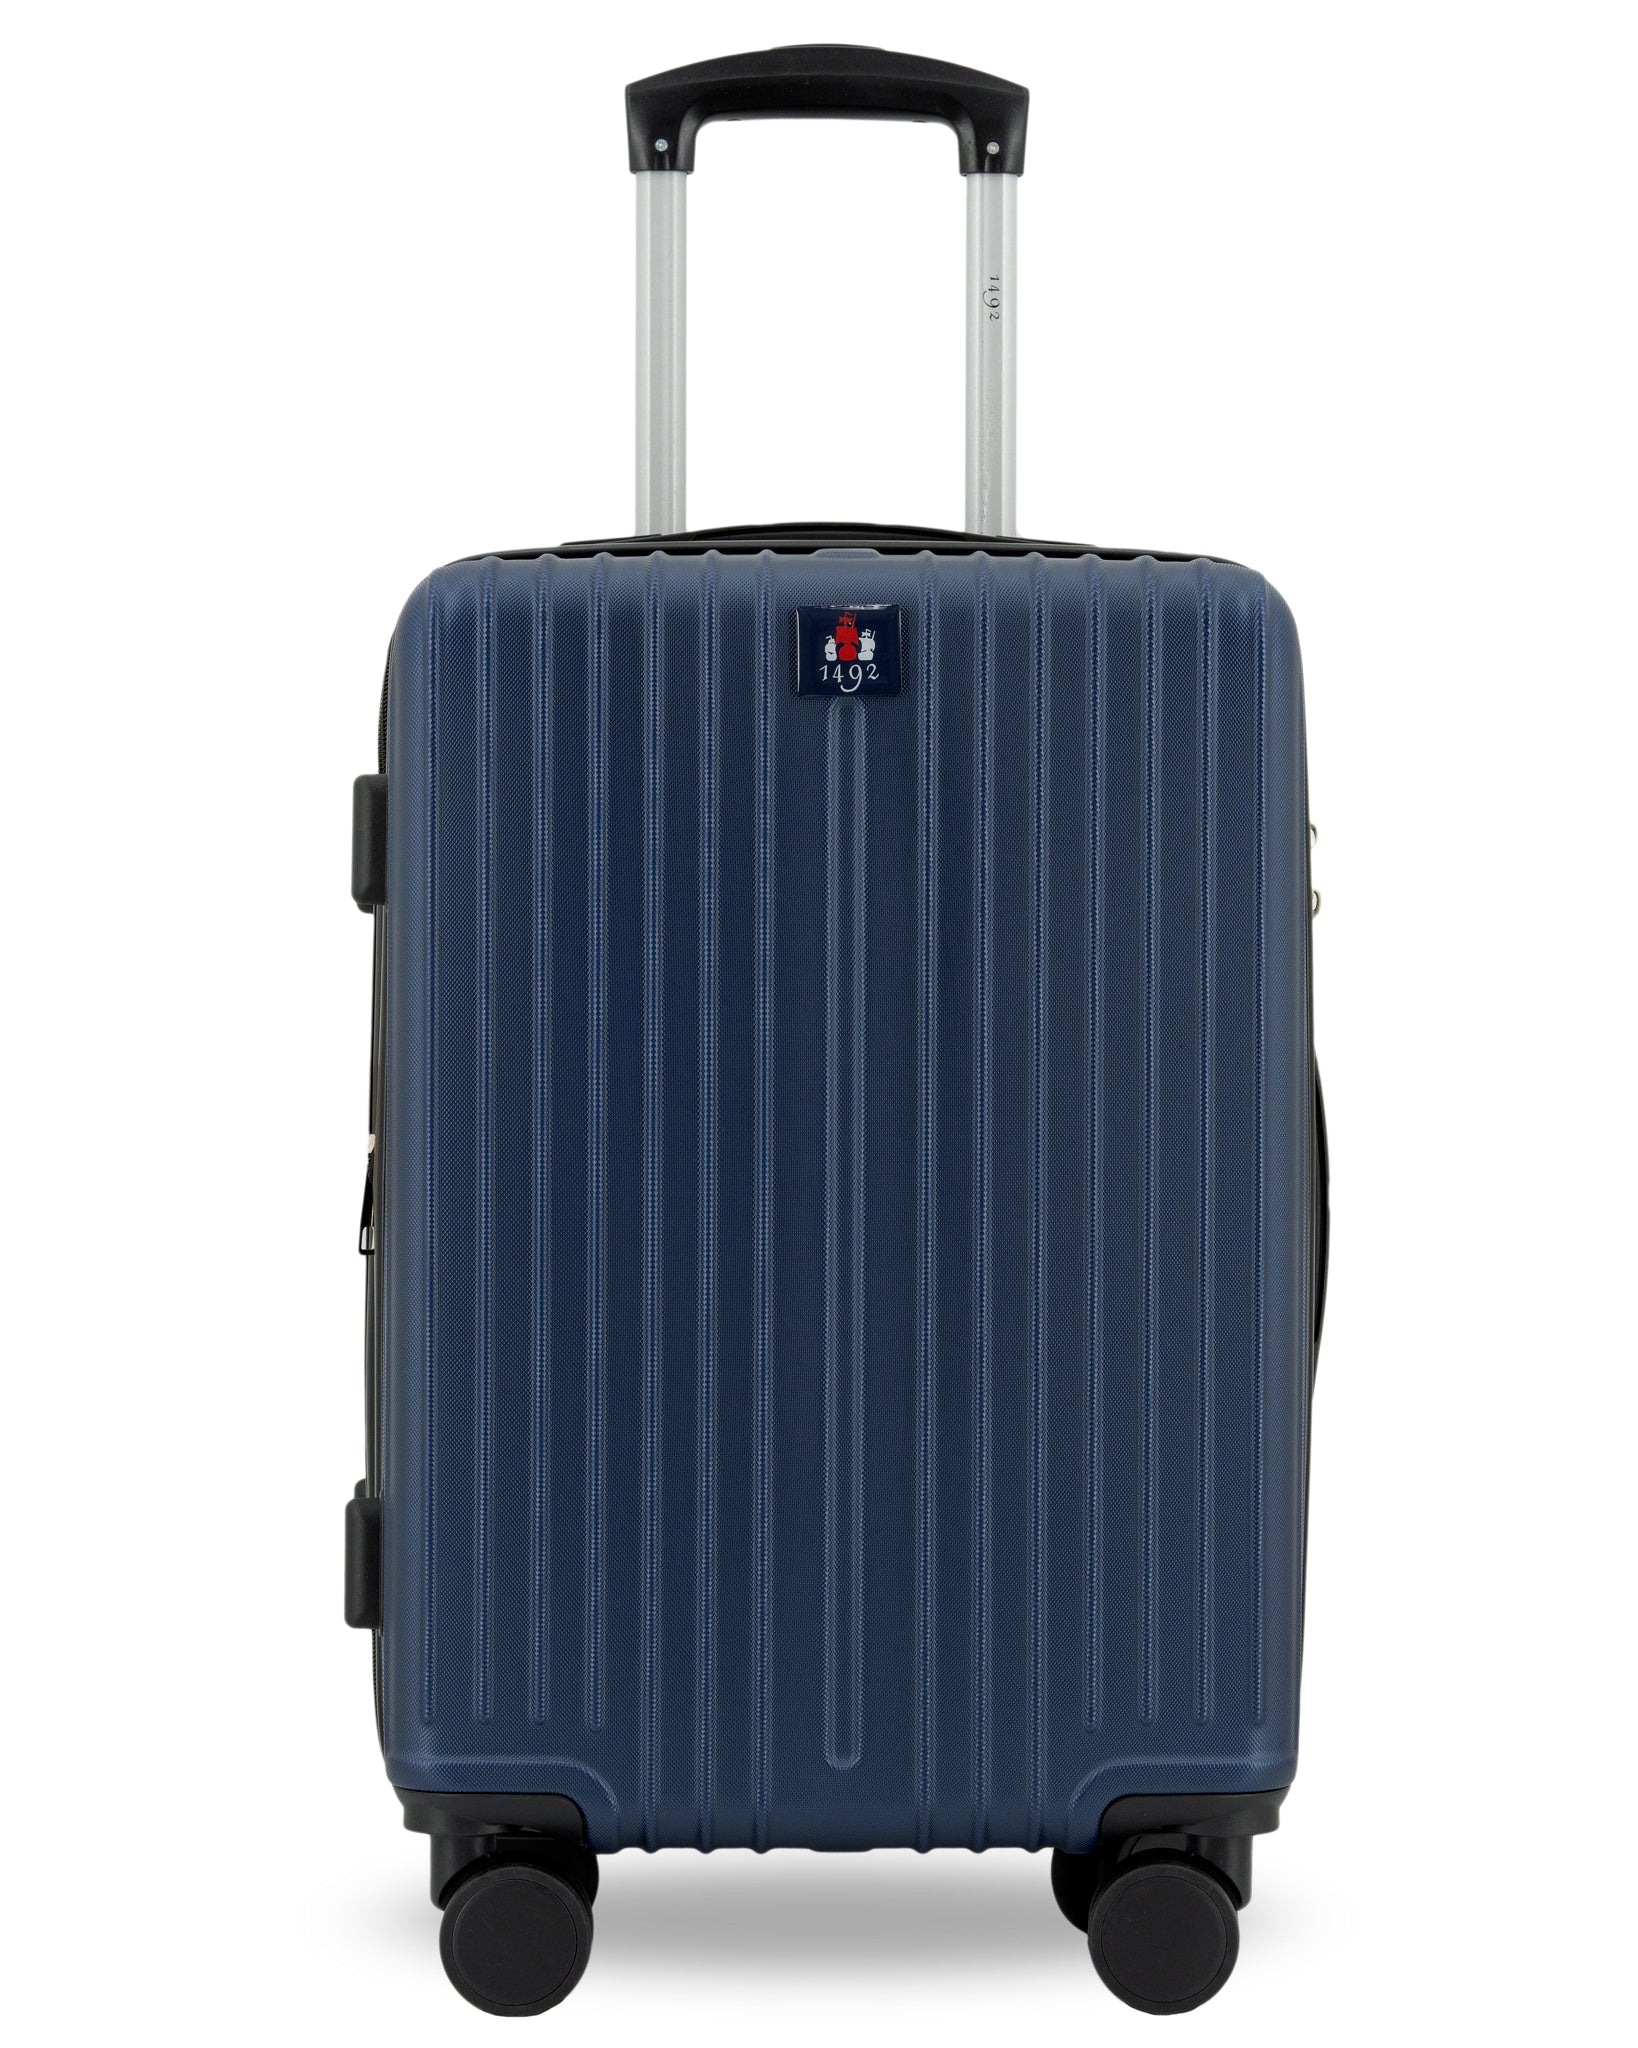 maleta-1492-con-rueda-para-viajes